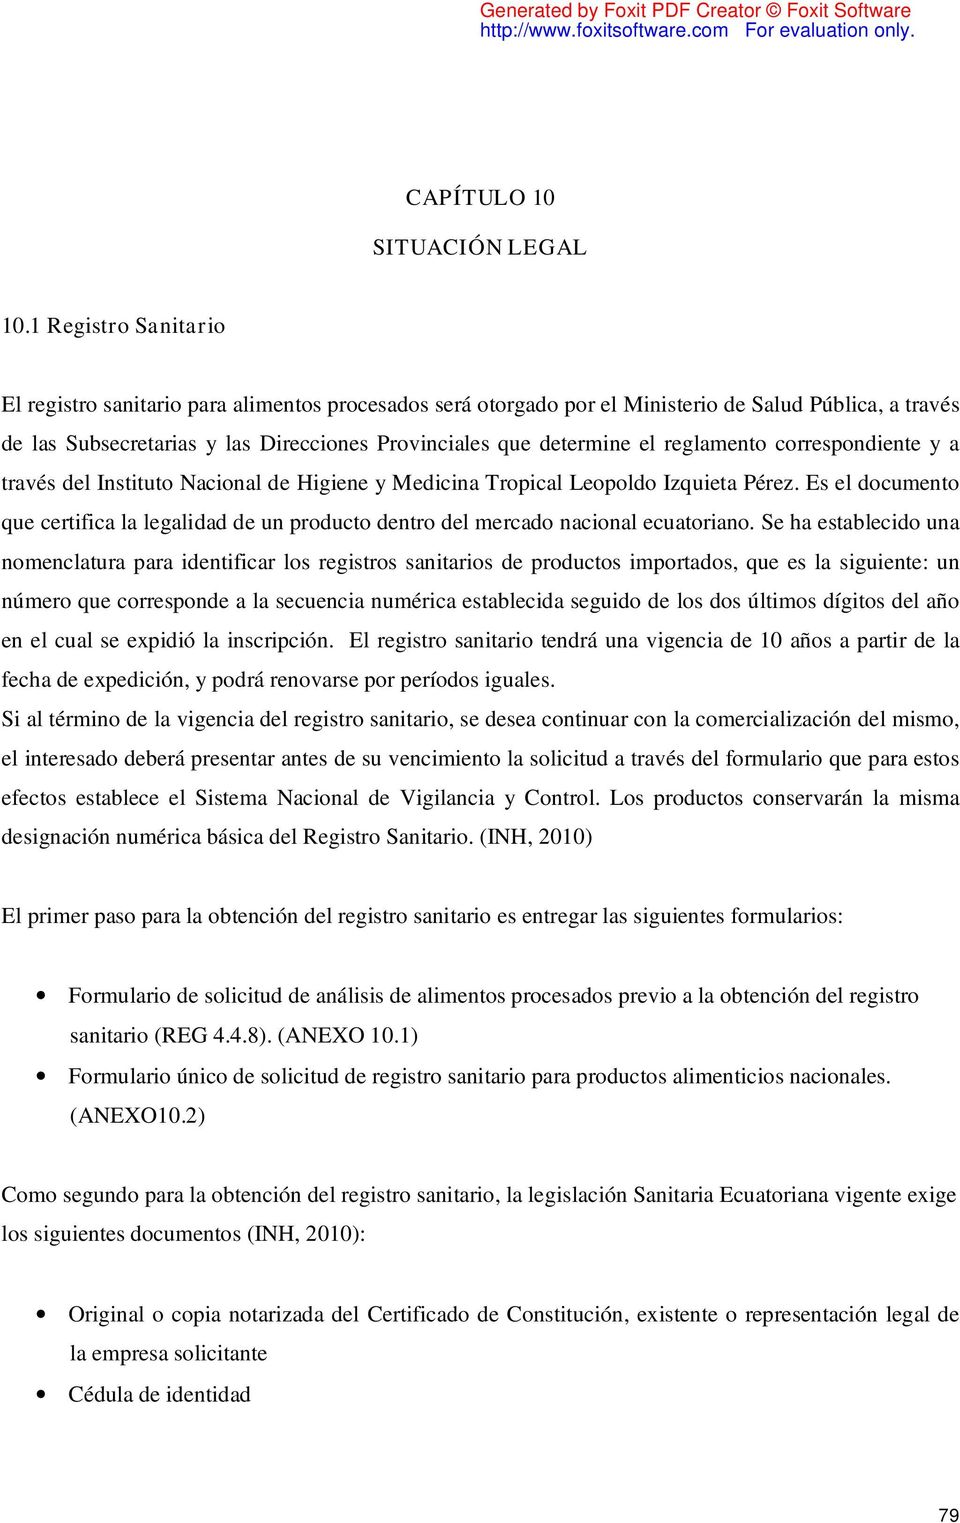 reglamento correspondiente y a través del Instituto Nacional de Higiene y Medicina Tropical Leopoldo Izquieta Pérez.